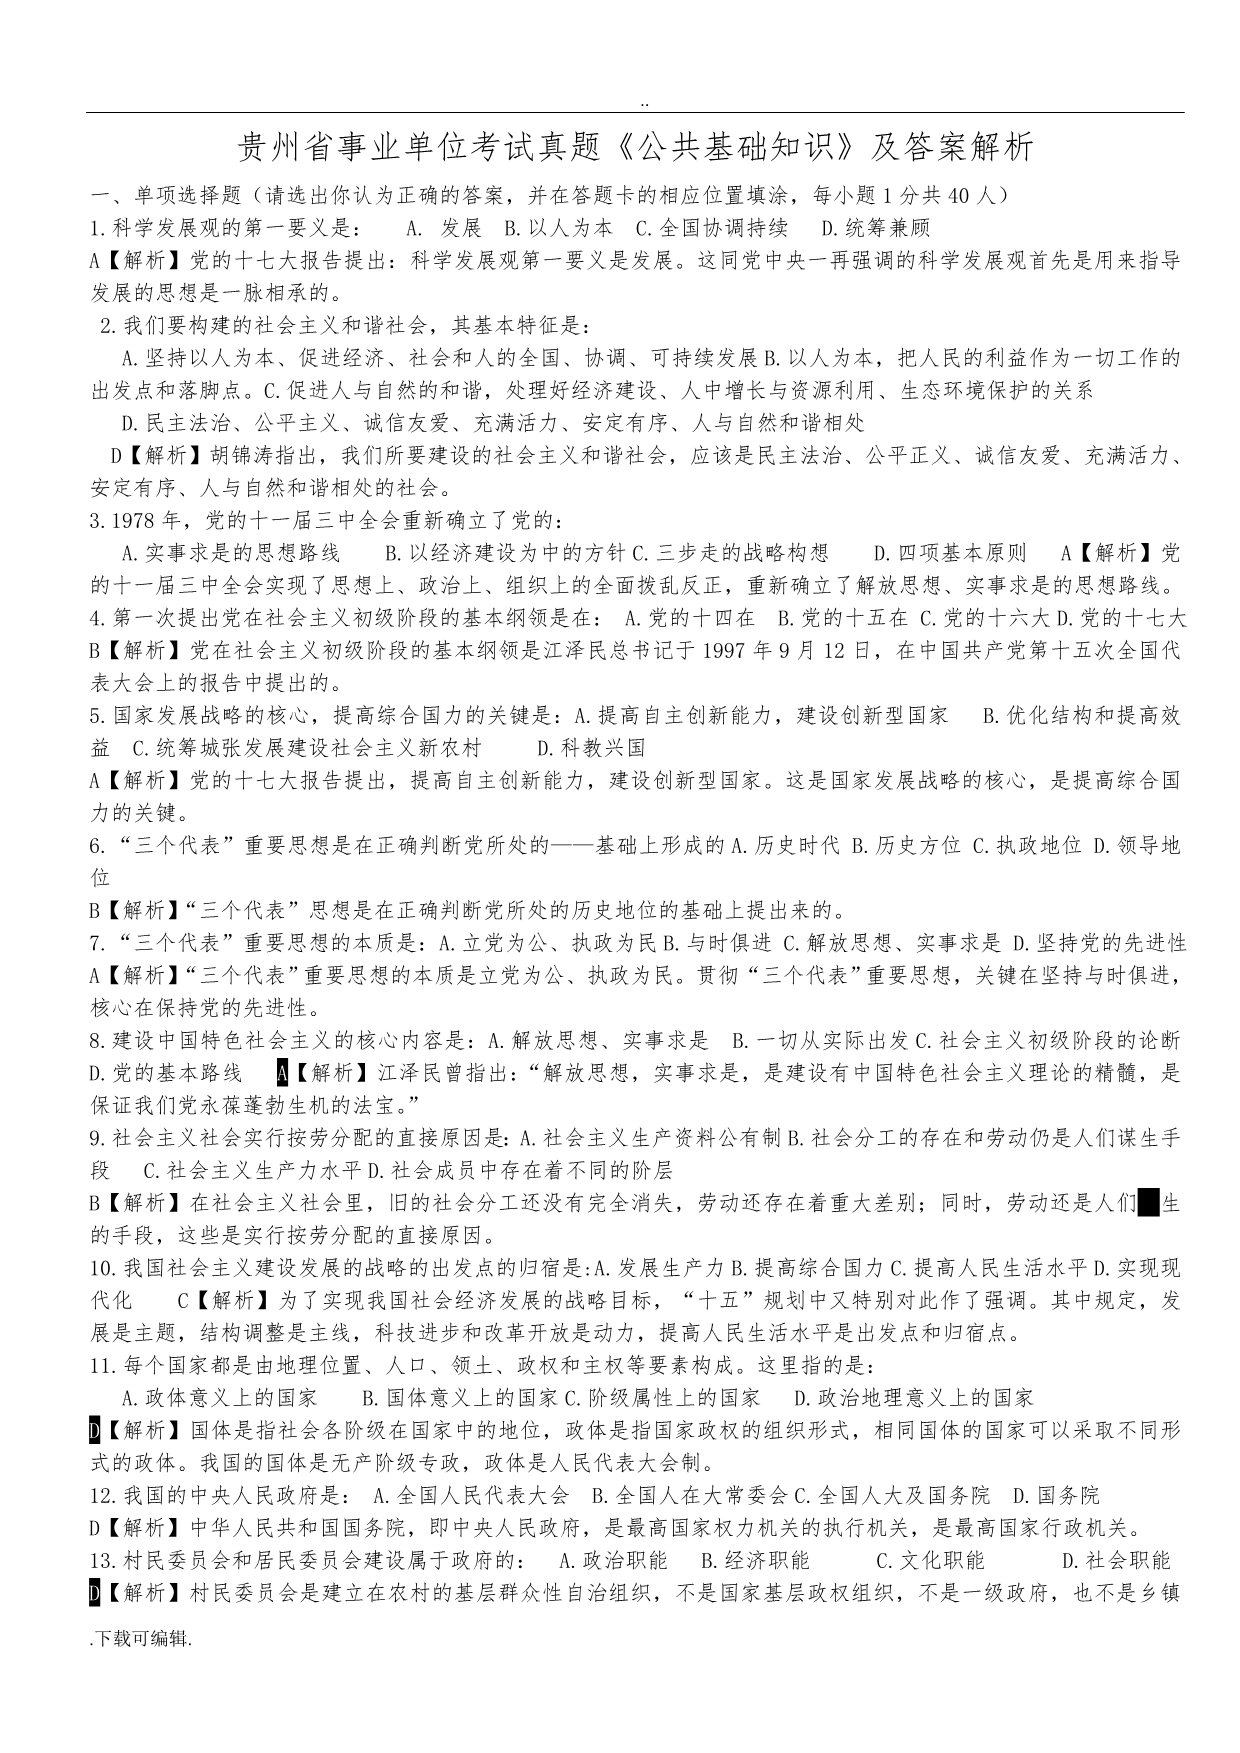 贵州省事业单位考试真题《公共基础知识》与答案解析(已编辑_可直接打印哦)_第1页